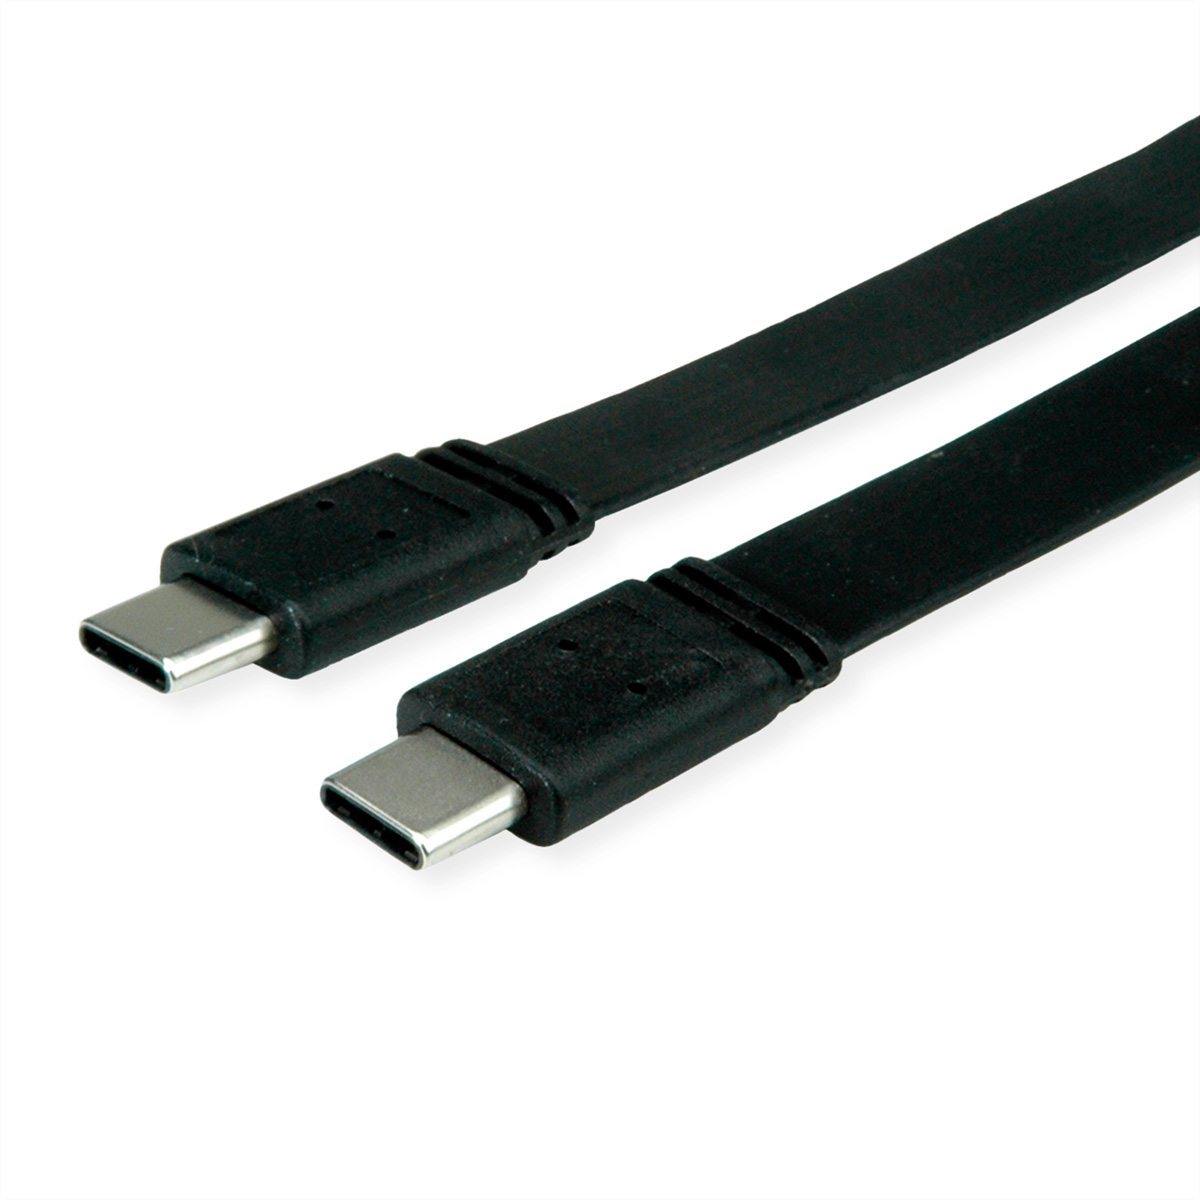 VALUE USB4 Gen ST/ST Kabel, 3 Kabel Emark, USB4 C-C